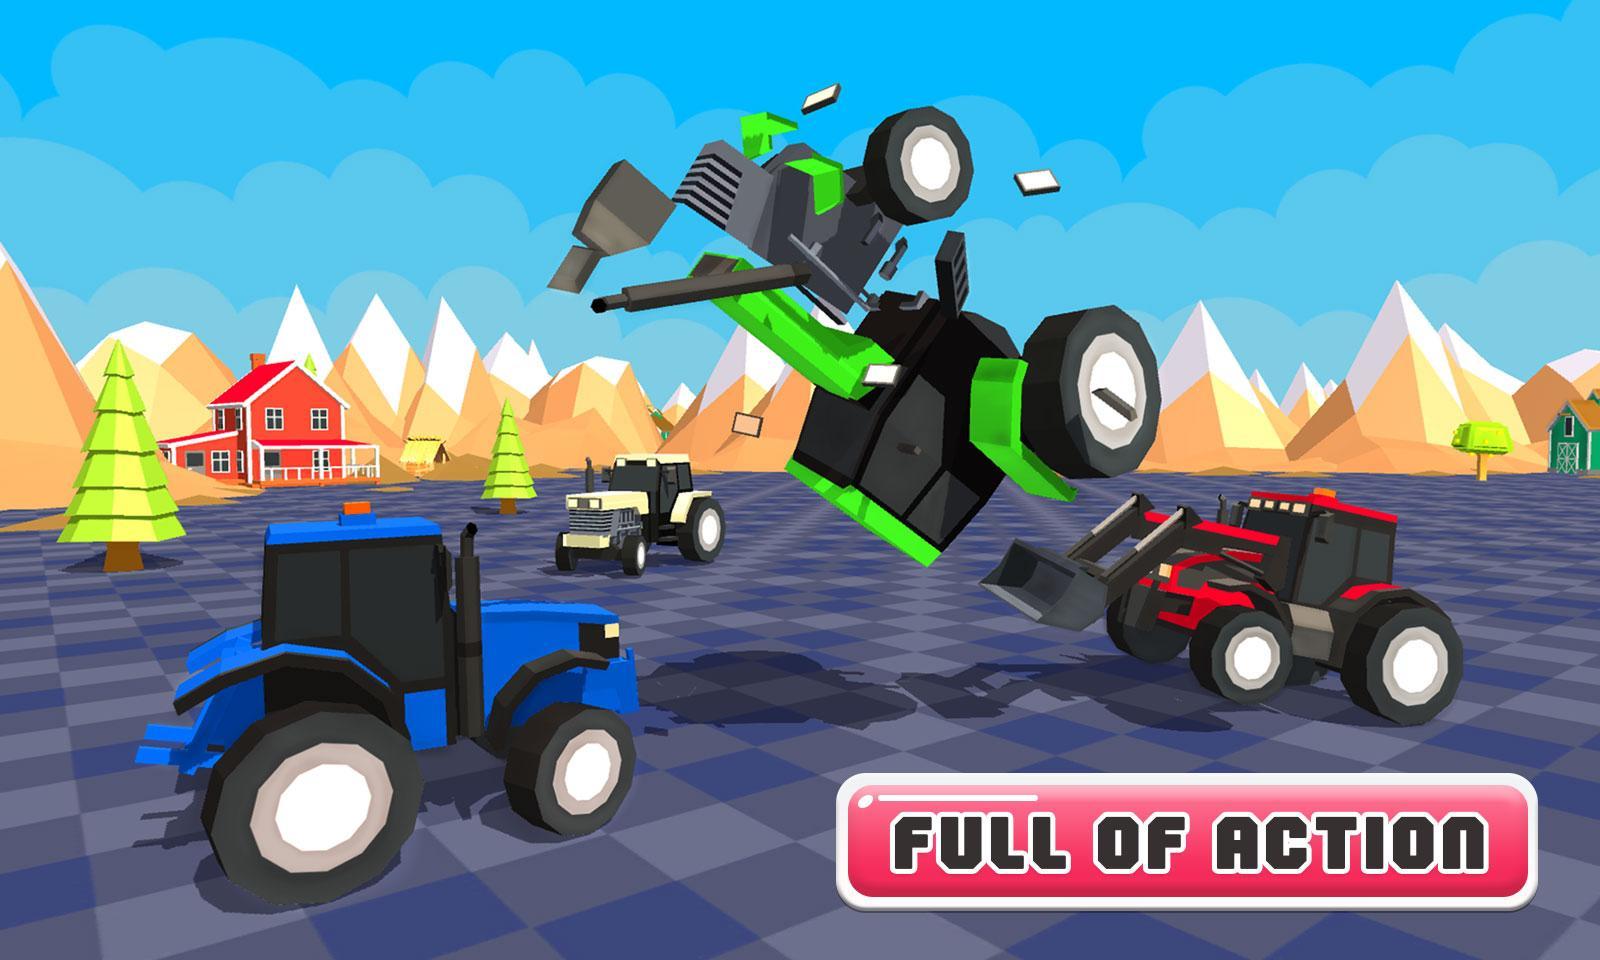 Screenshot 1 of Bataille de tracteurs jouets Final Wars 1.0